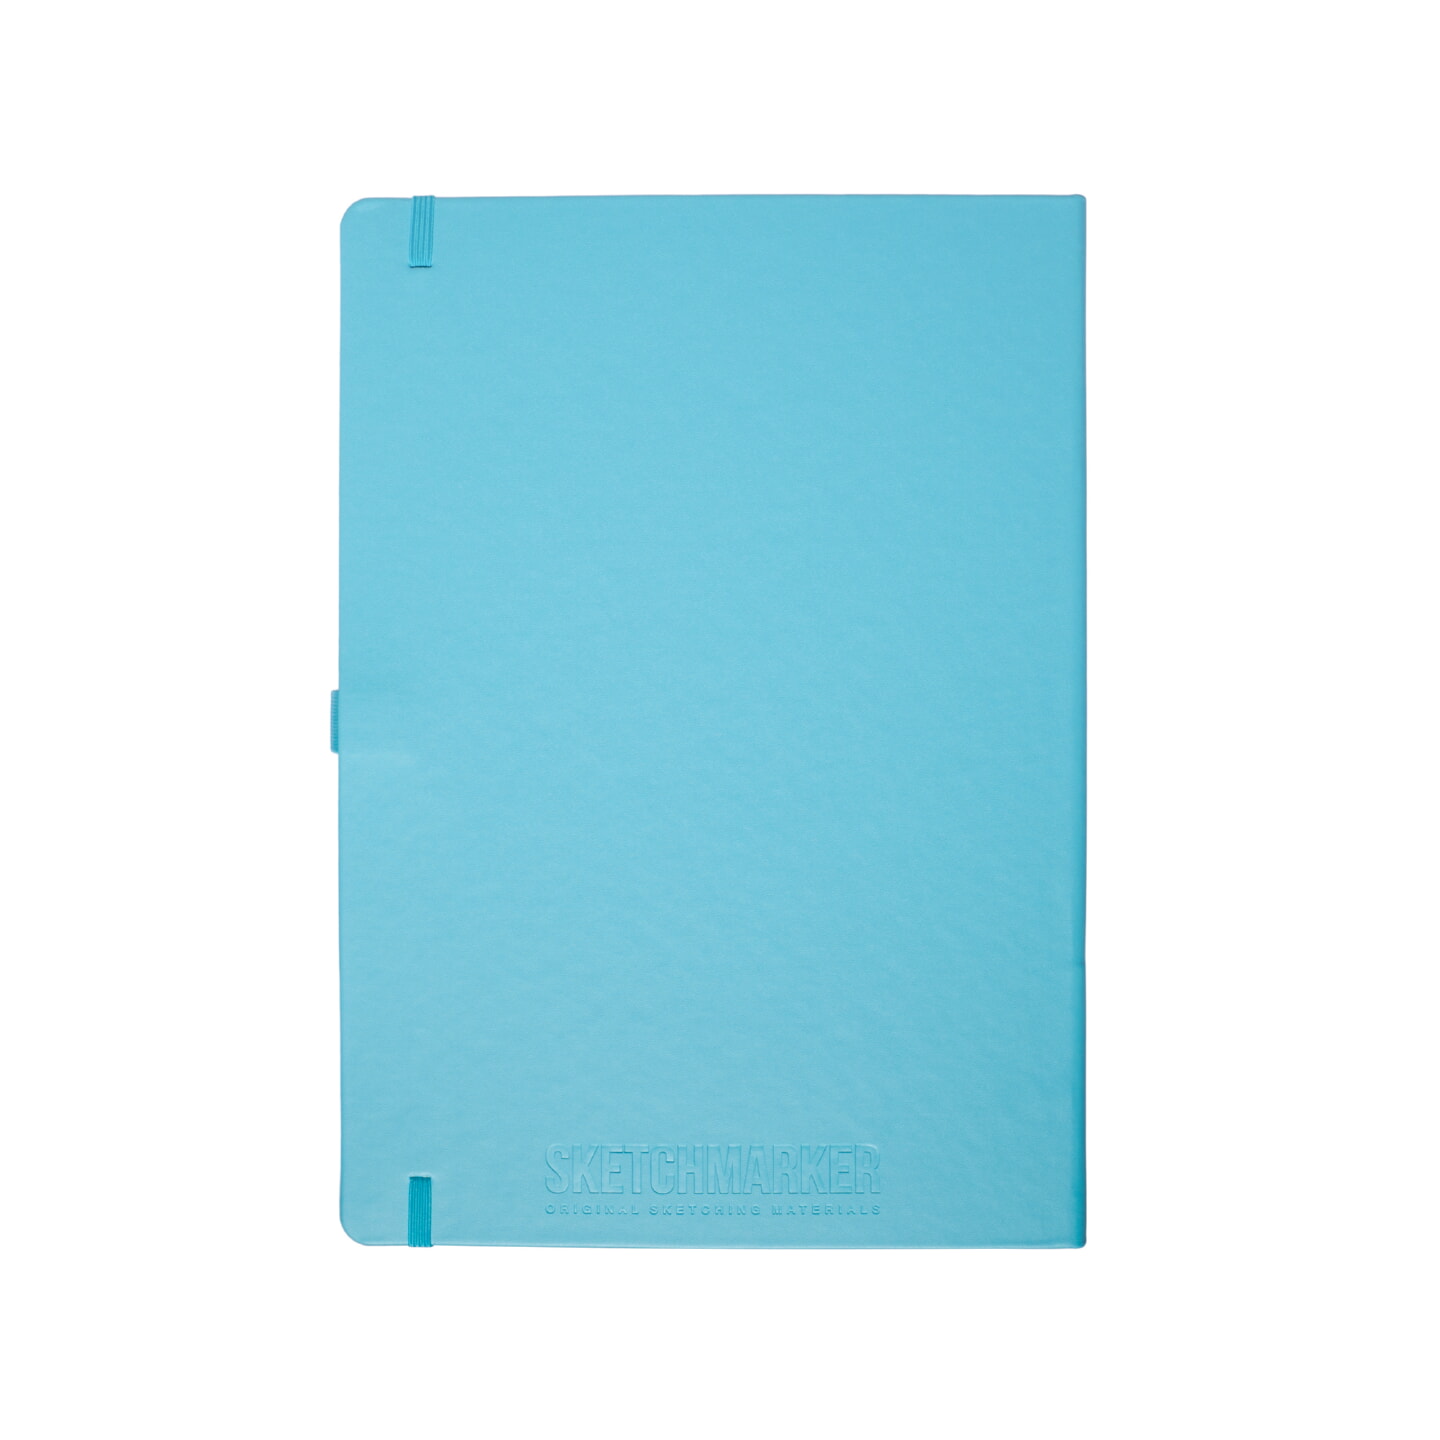 Блокнот для зарисовок Sketchmarker 140г/кв.м 21*29.7см 80л твердая обложка Небесно-голубой